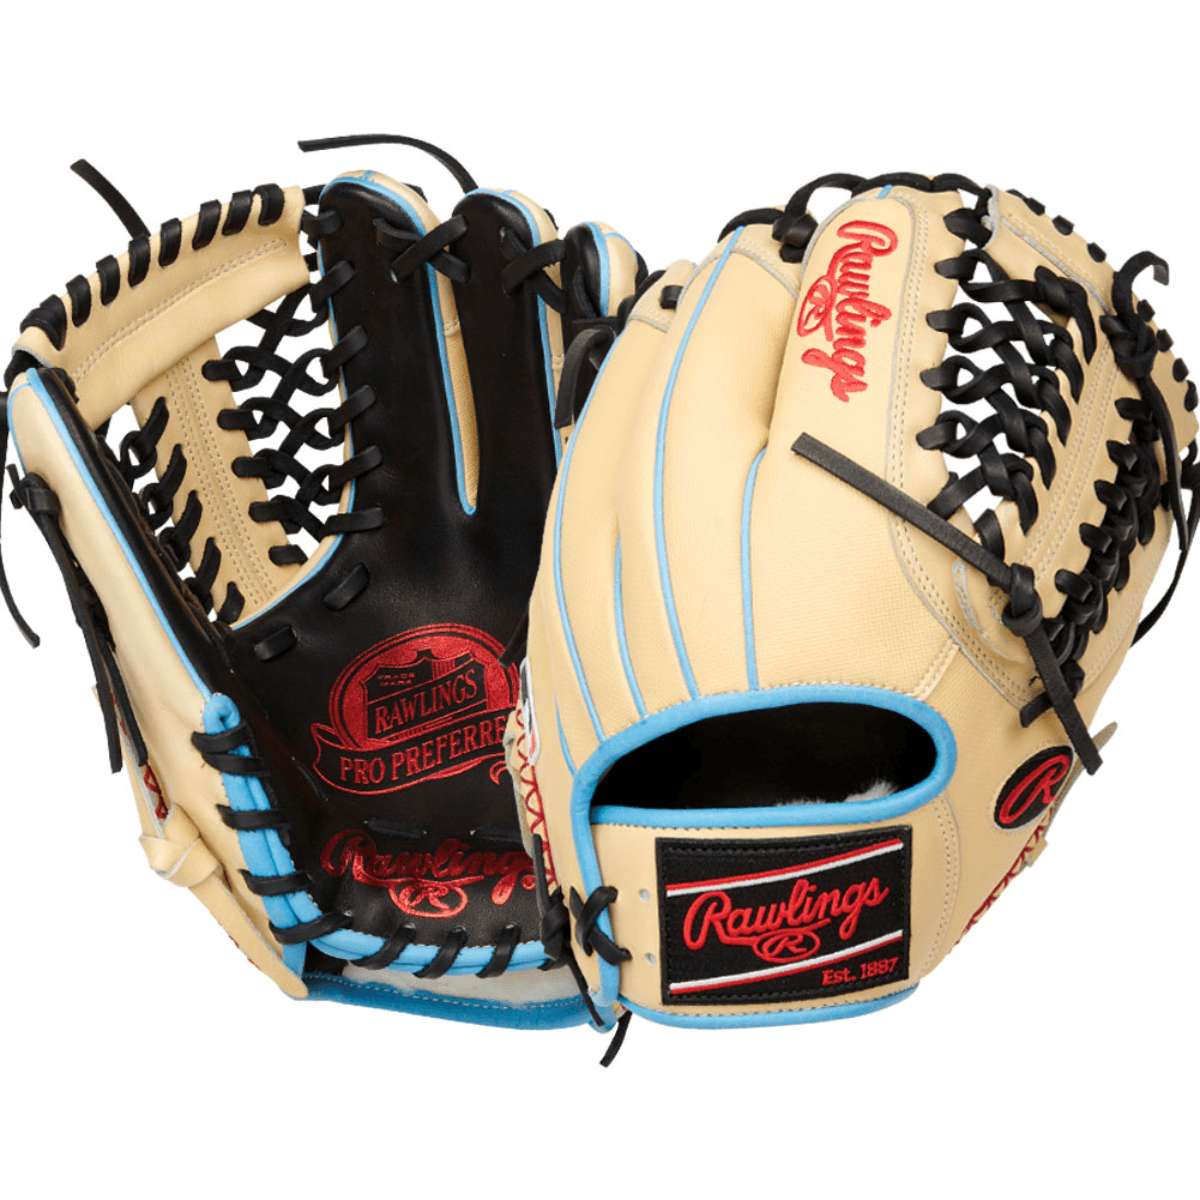 Best Looking MLB Glove